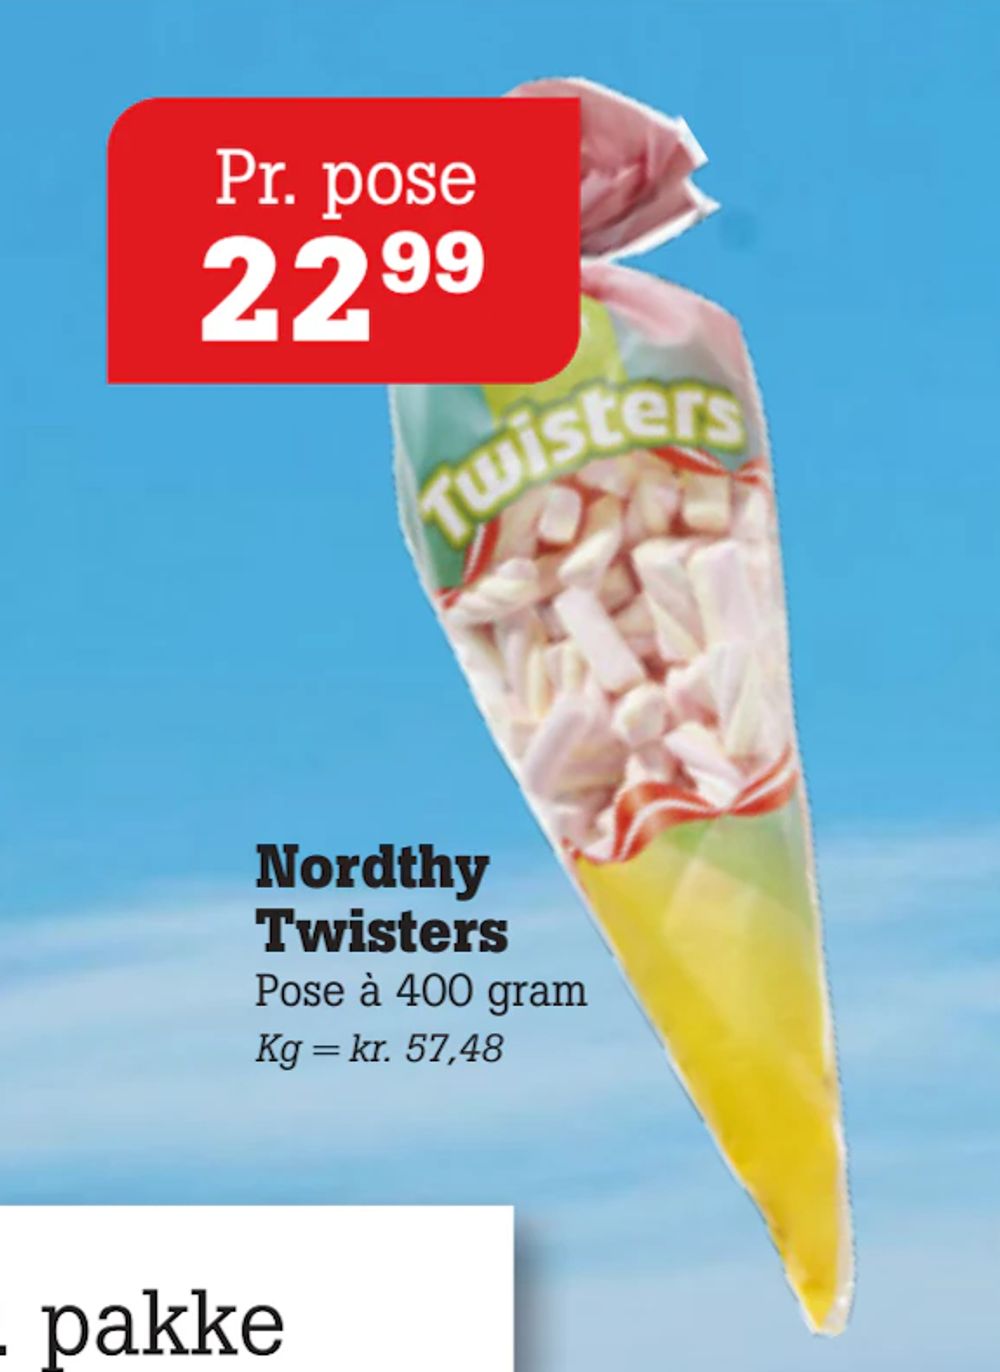 Tilbud på Nordthy Twisters fra Poetzsch Padborg til 22,99 kr.